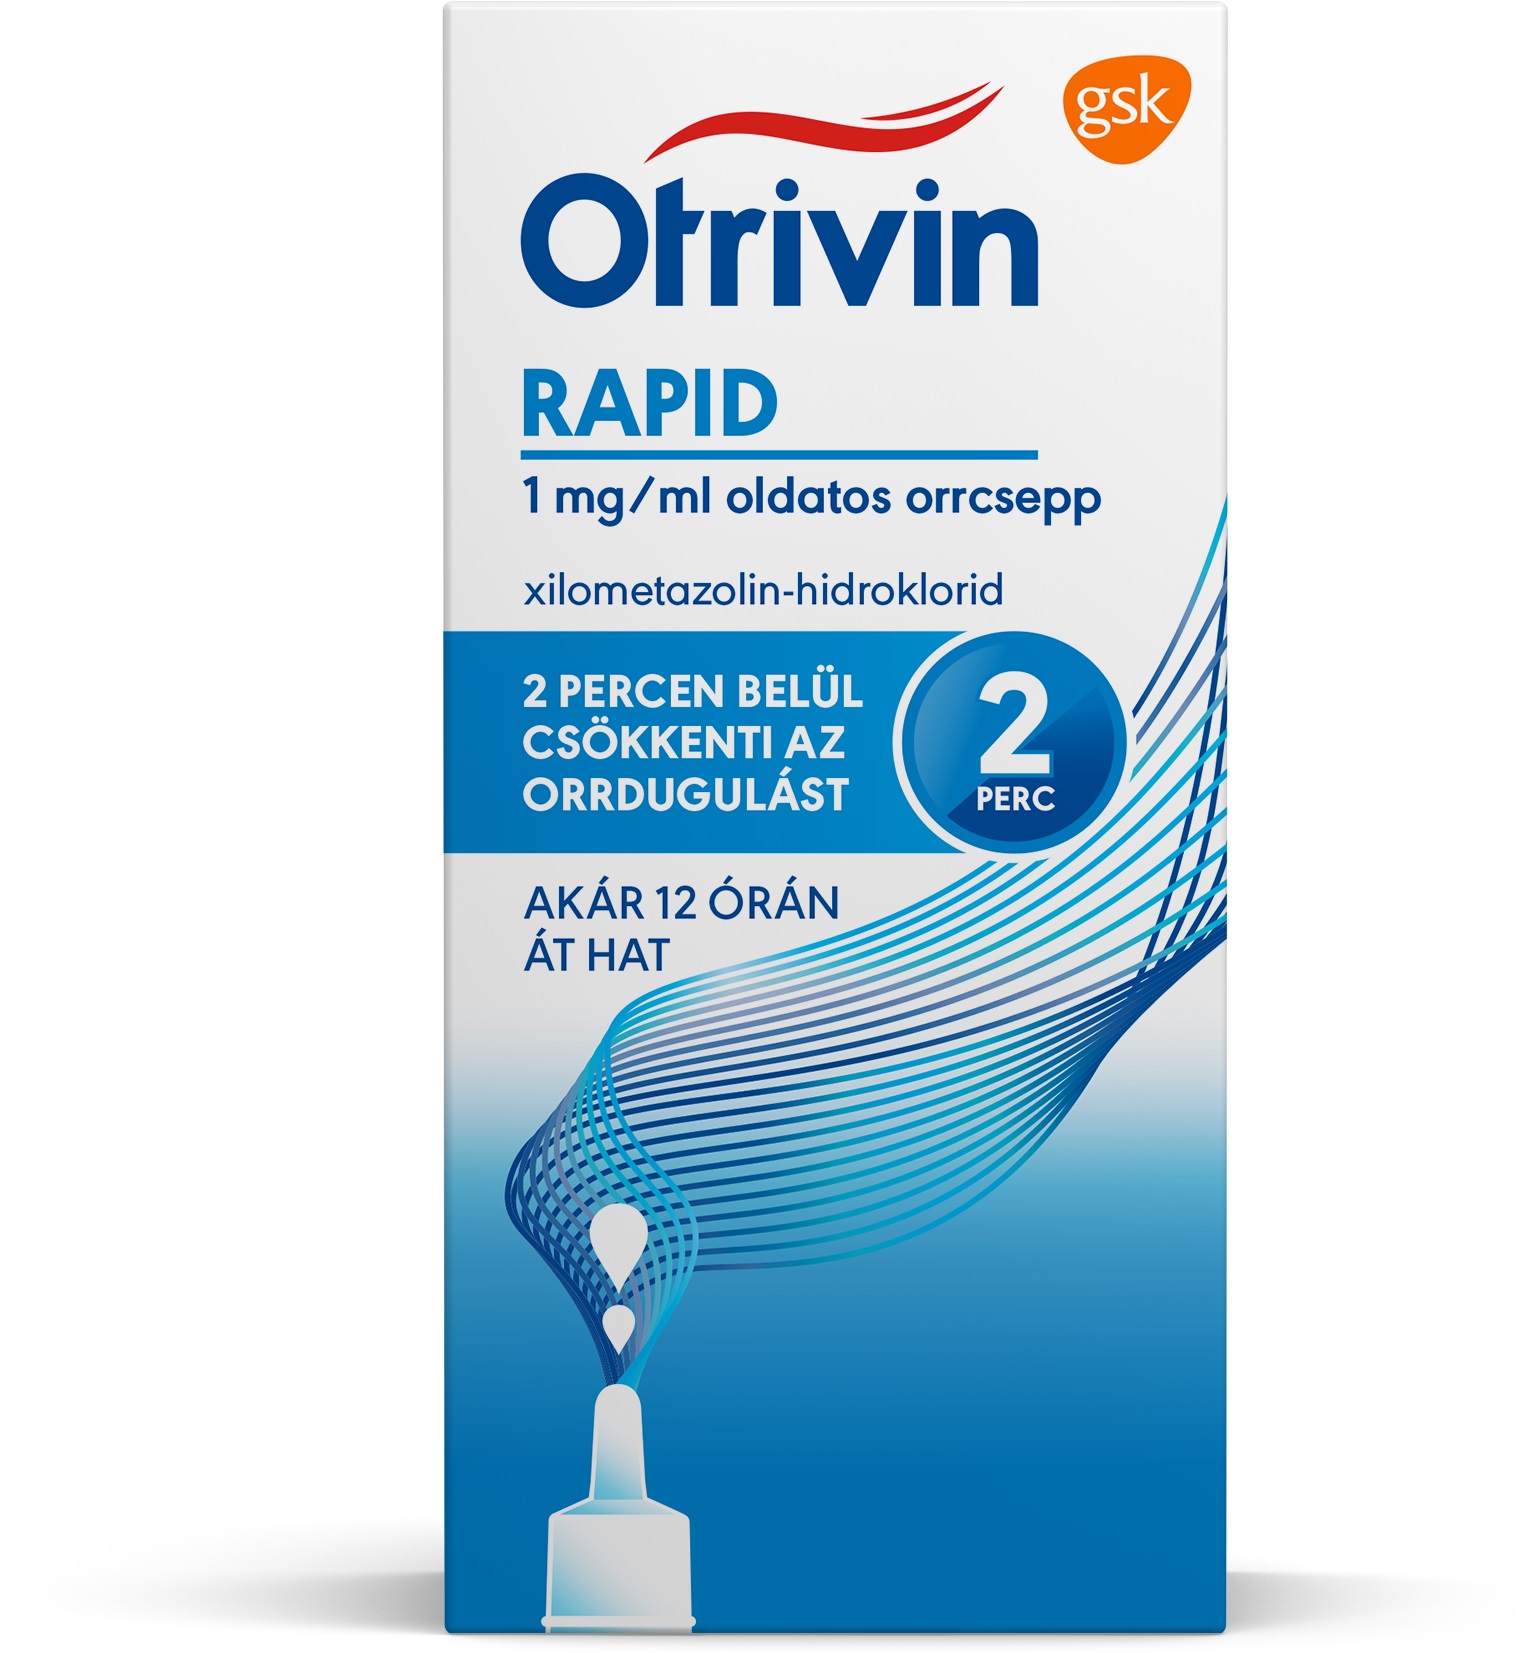 Otrivin Rapid 1 mg/ml oldatos orrcsepp